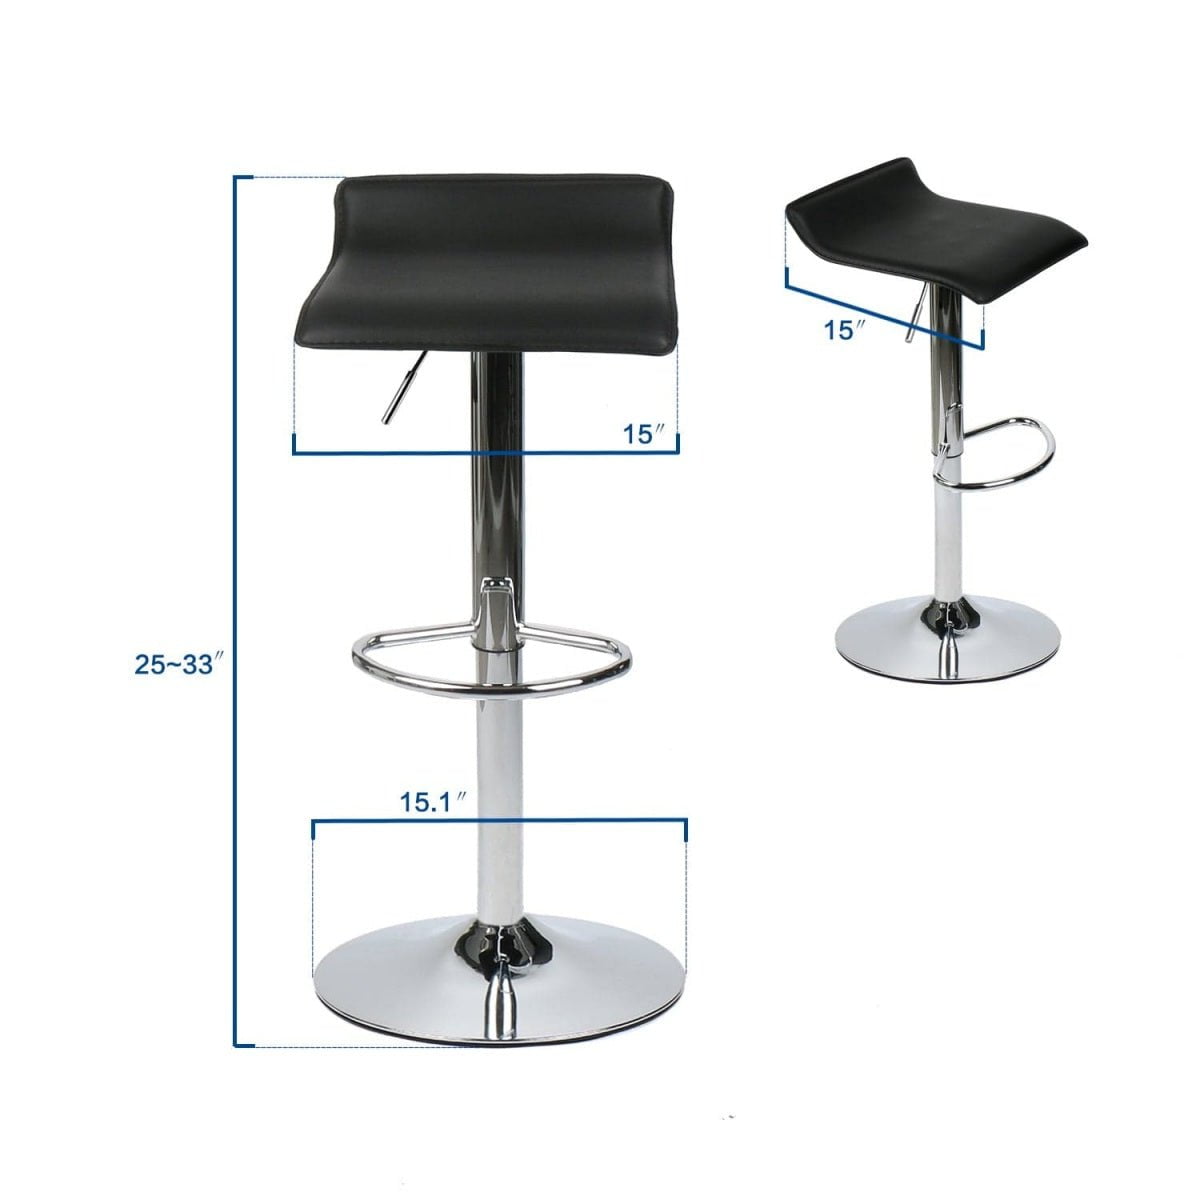 Elecwish black bar stool OW002 size